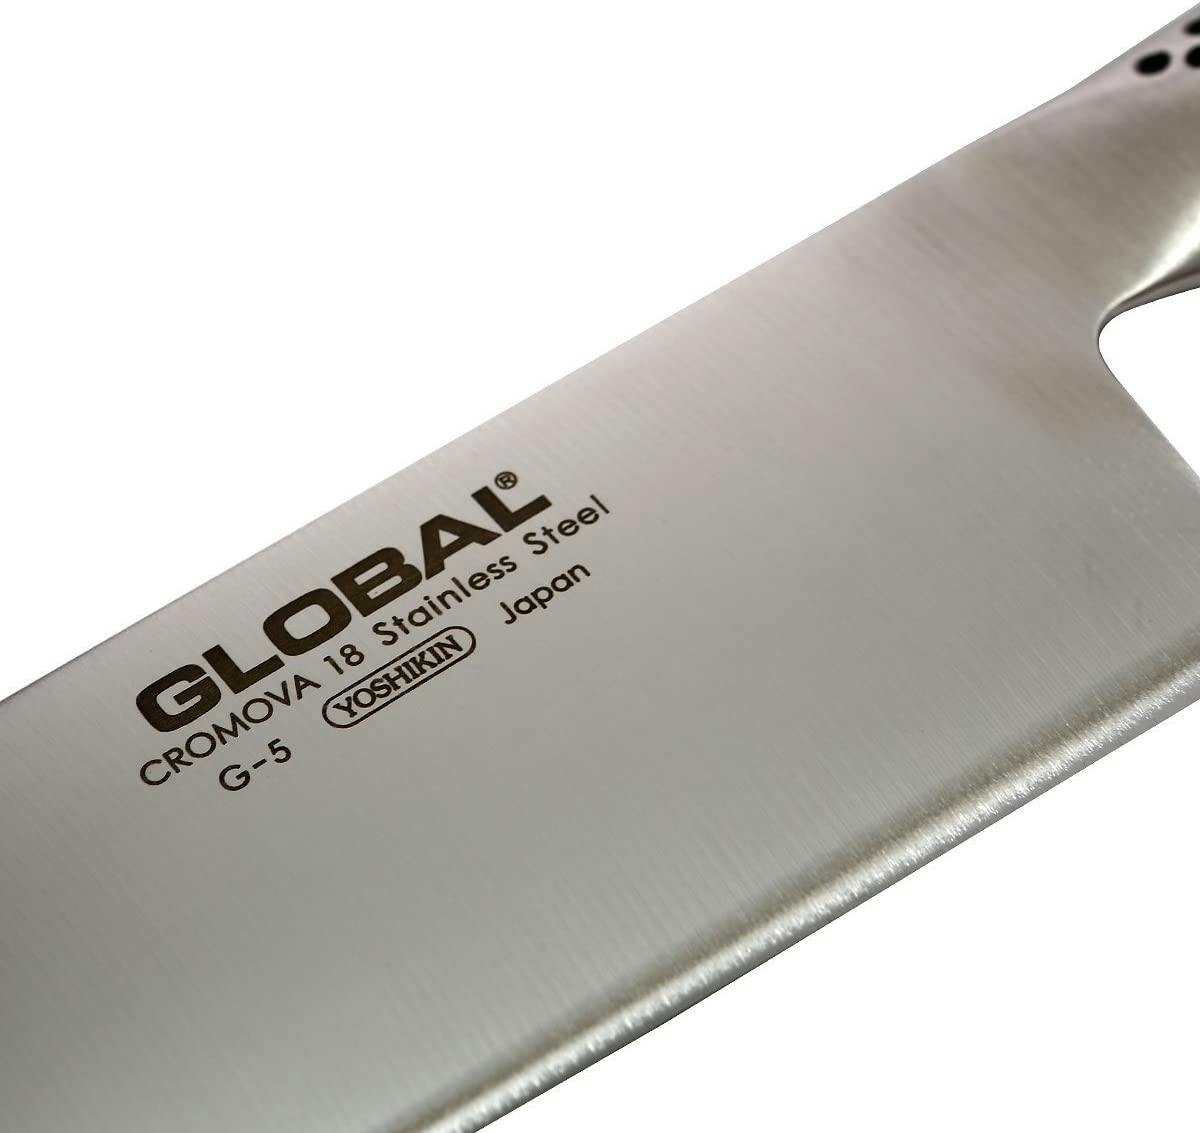 Global 7-In. Vegetable Knife